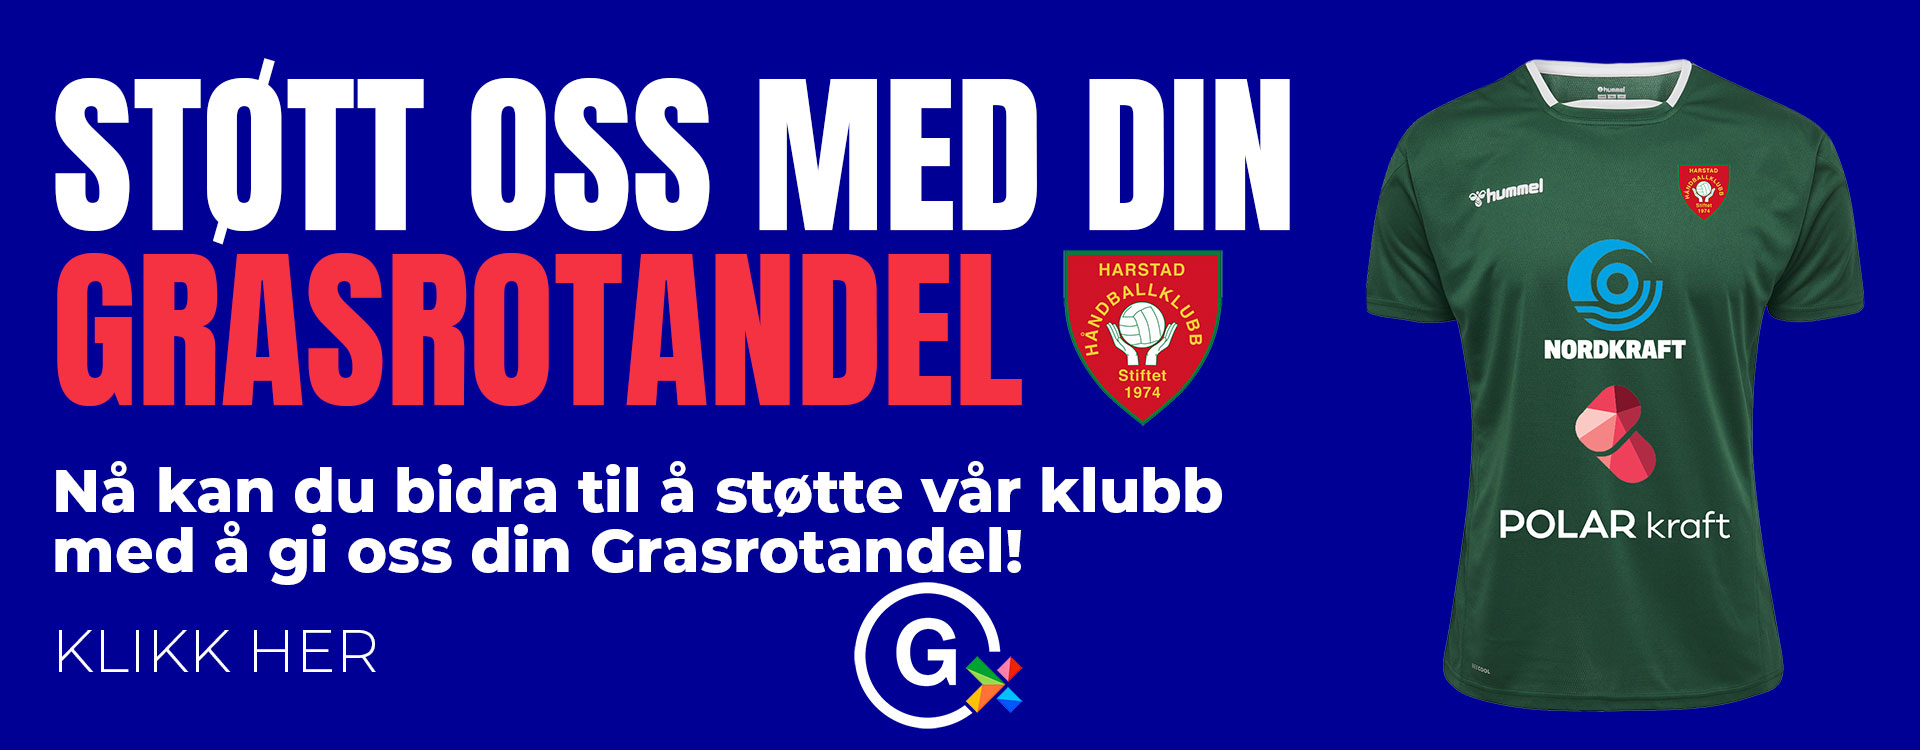 Harstad Håndballklubb